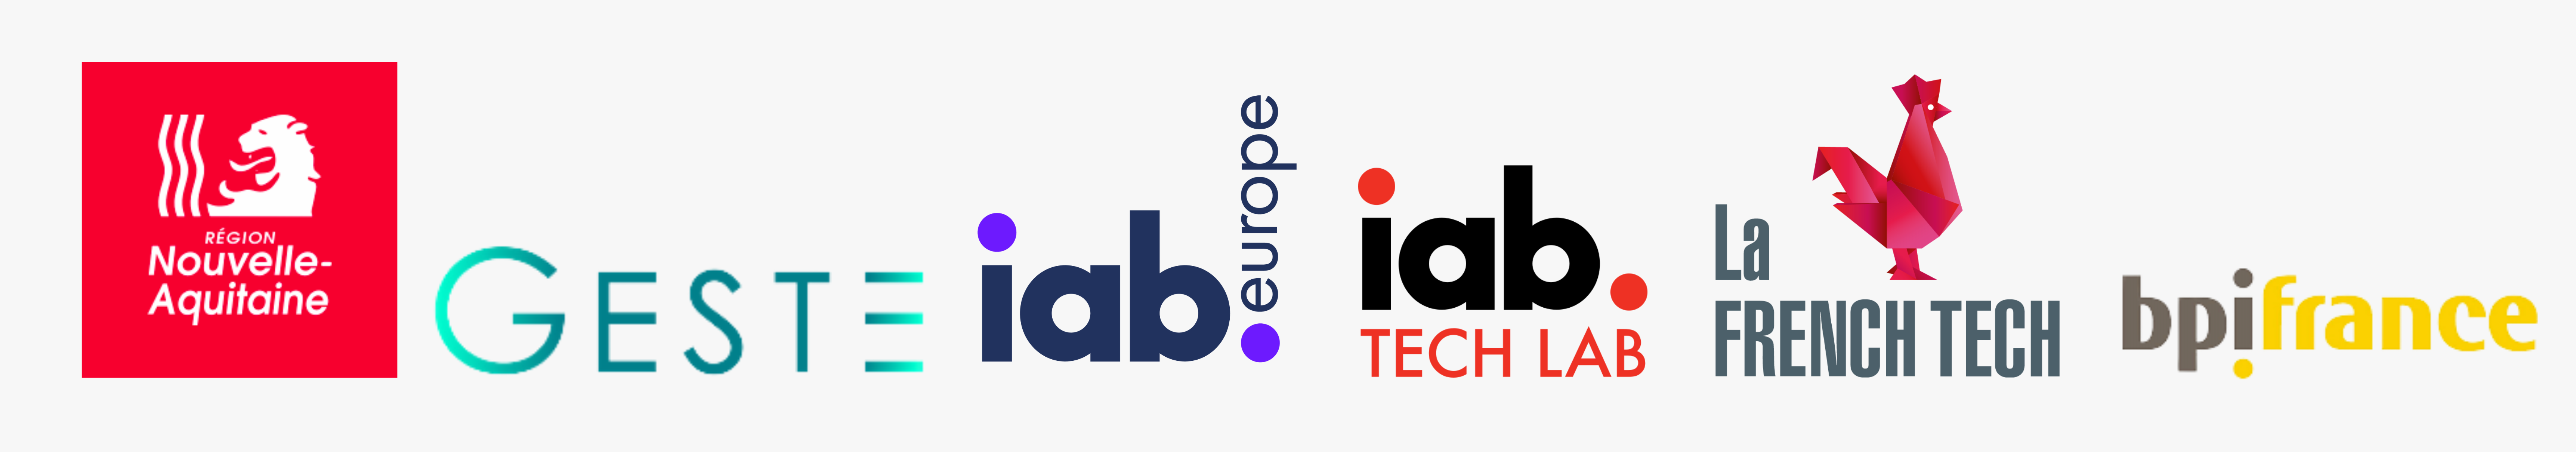 Logos de nos partenaires - Région Aquitaine, GESTE, IAB, French Tech, BPI